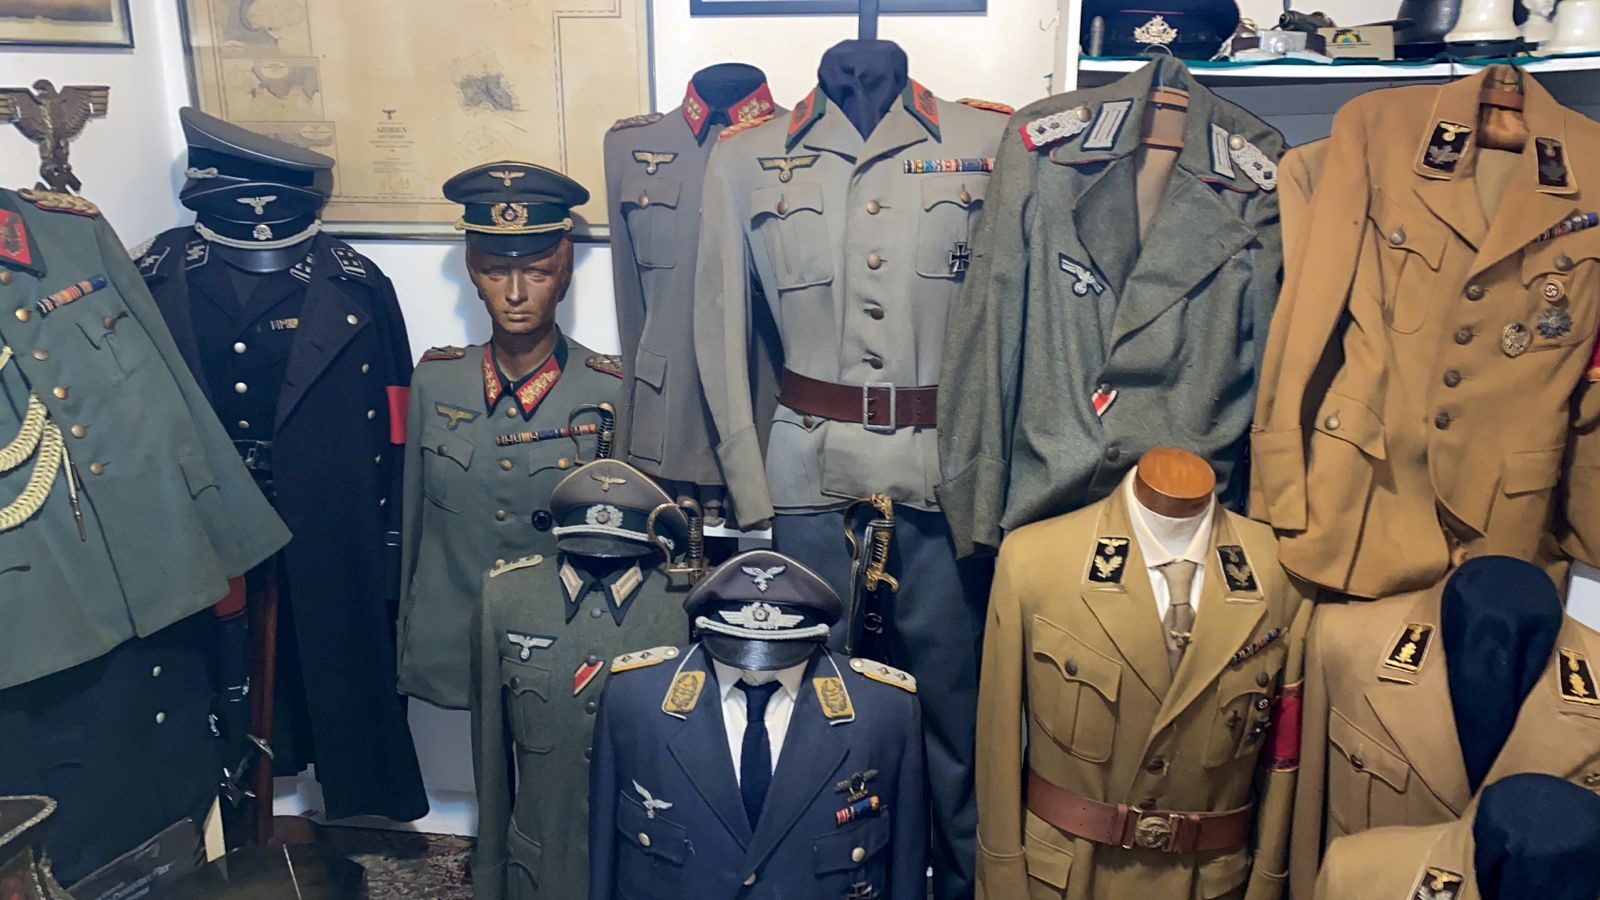 Civil police find trove of Nazi memorabilia in home of alleged pedophile in Rio de janeiro